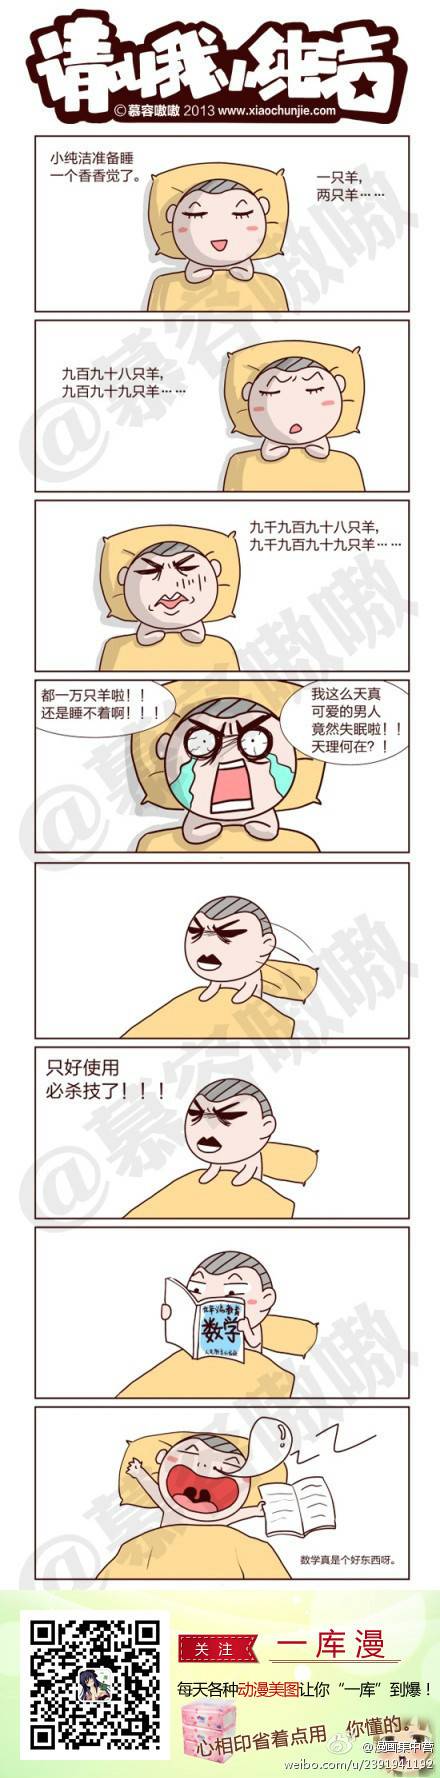 邪恶漫画爆笑囧图第84刊：小纯洁